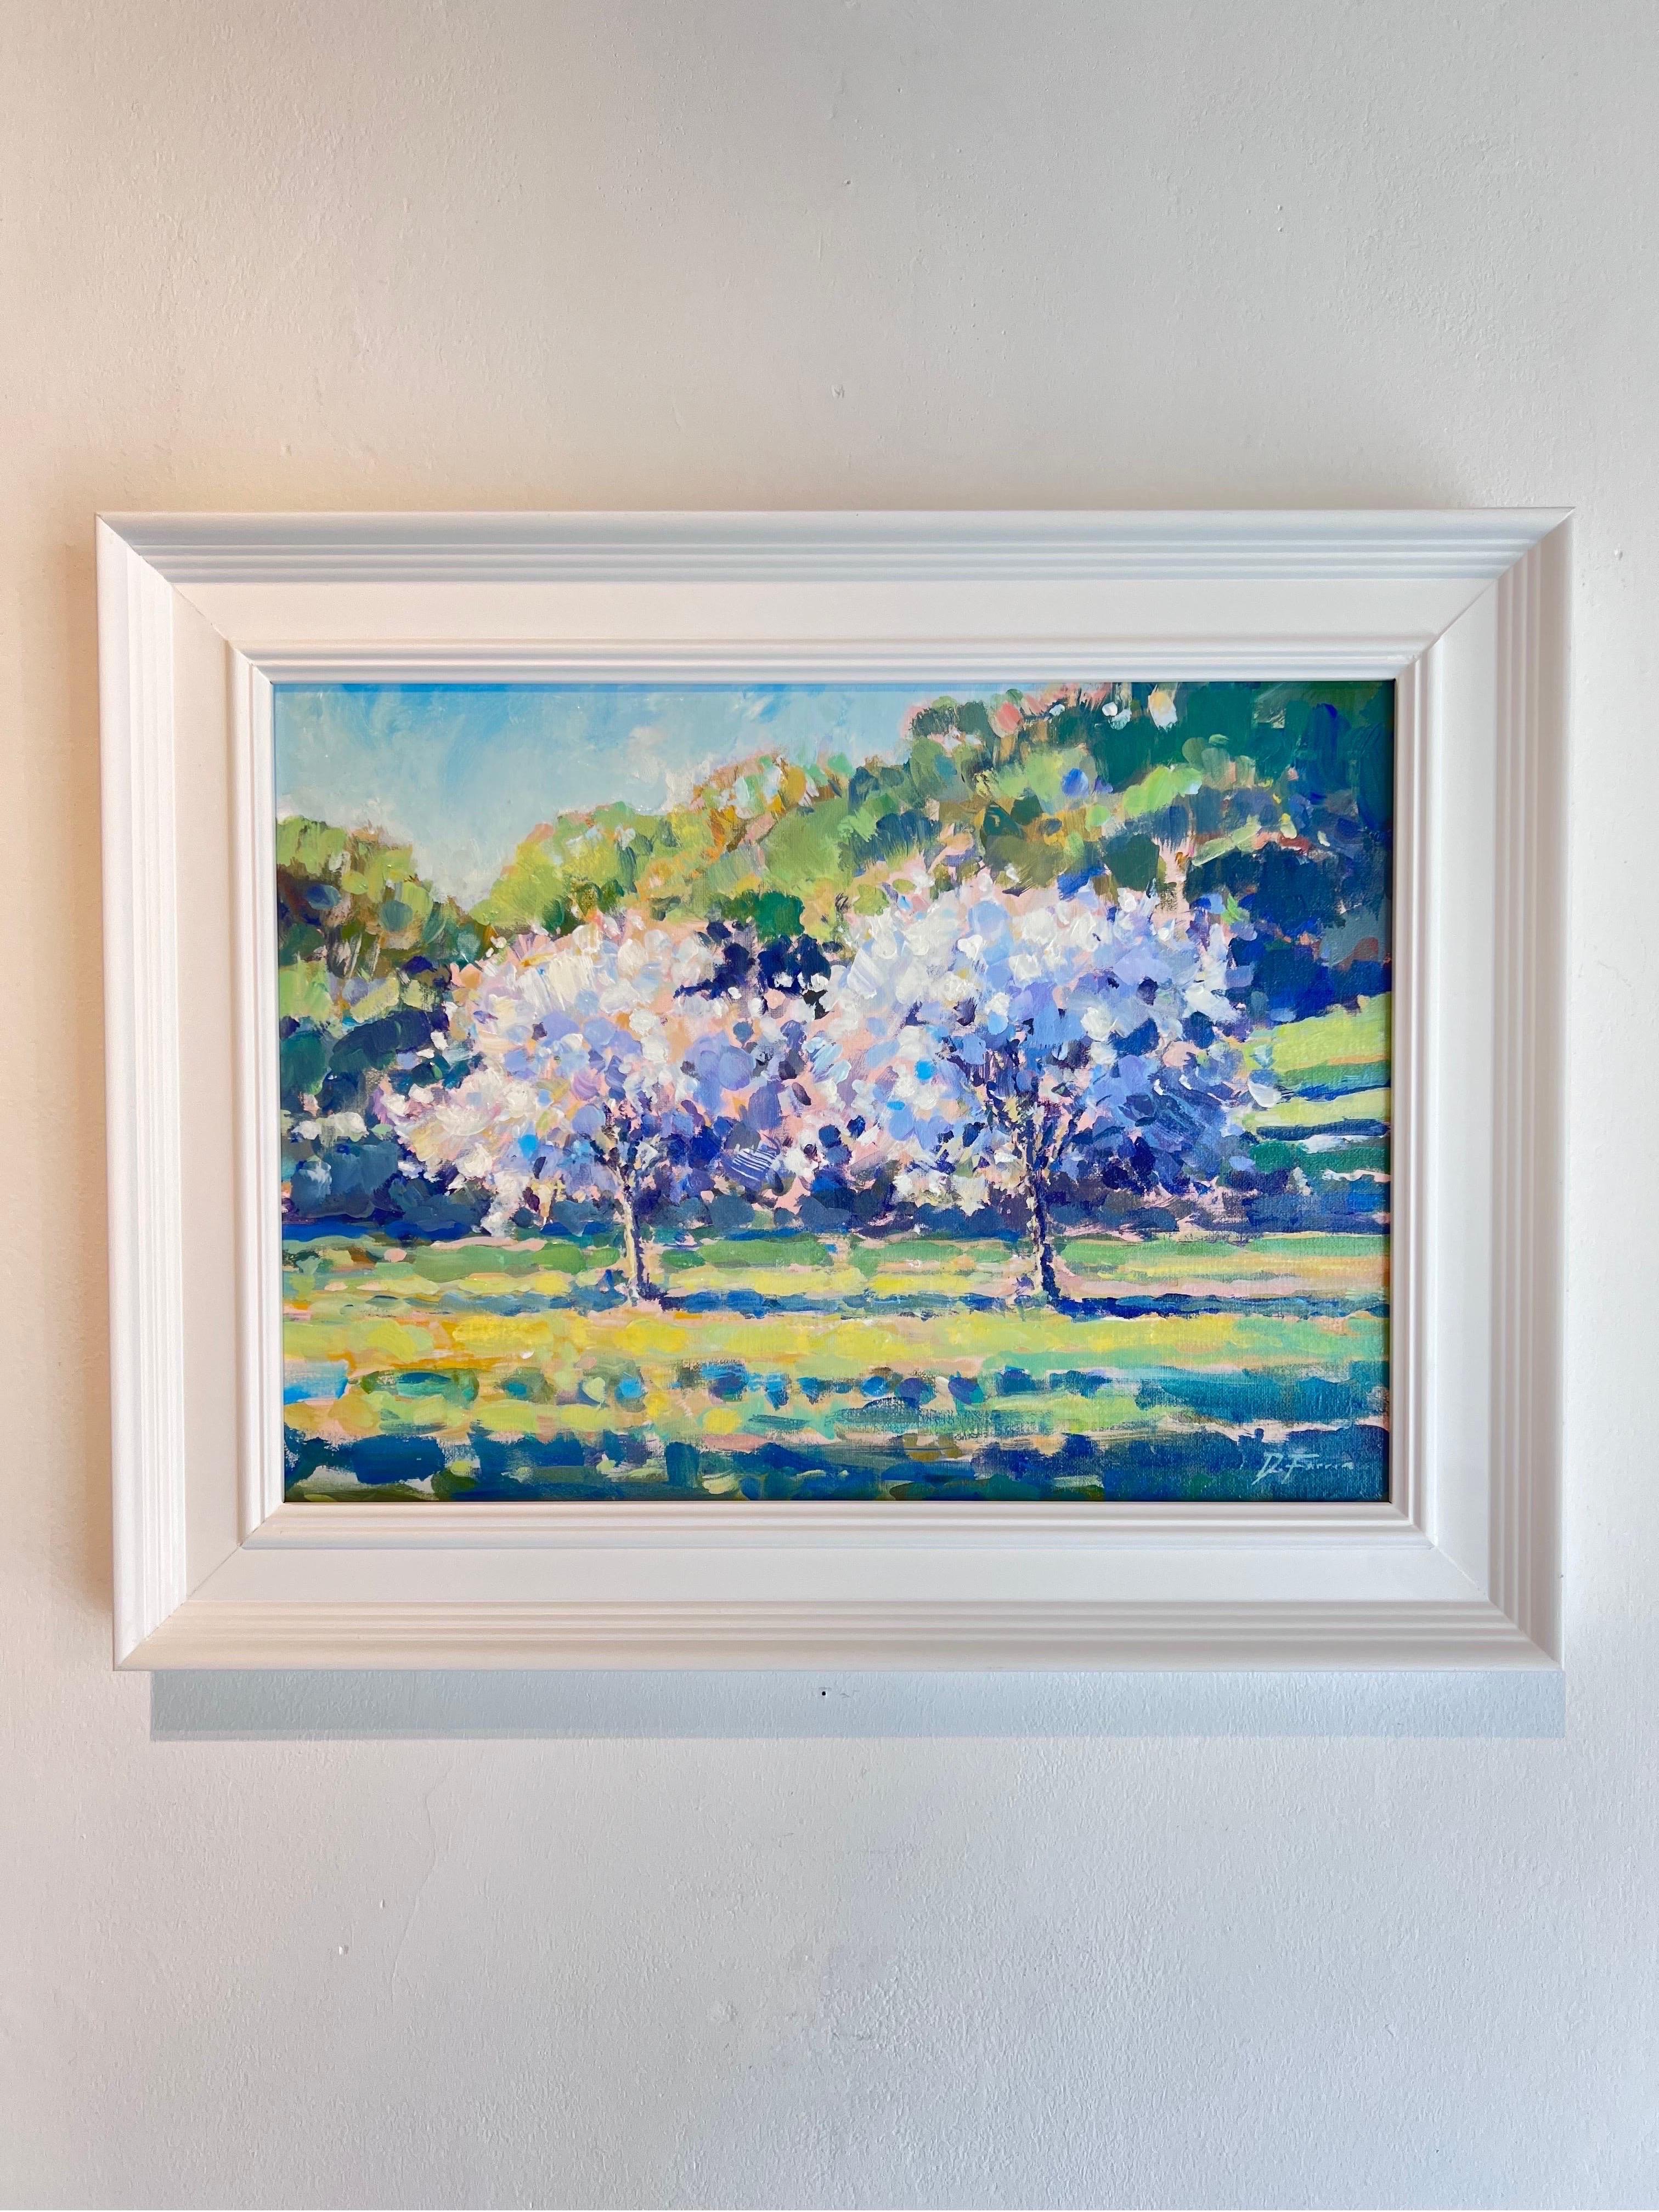 Apfelbäume in Bloom-Impressionismus im Bloom-Stil  Landschaftsmalerei - Zeitgenössische Kunst – Painting von David Farren